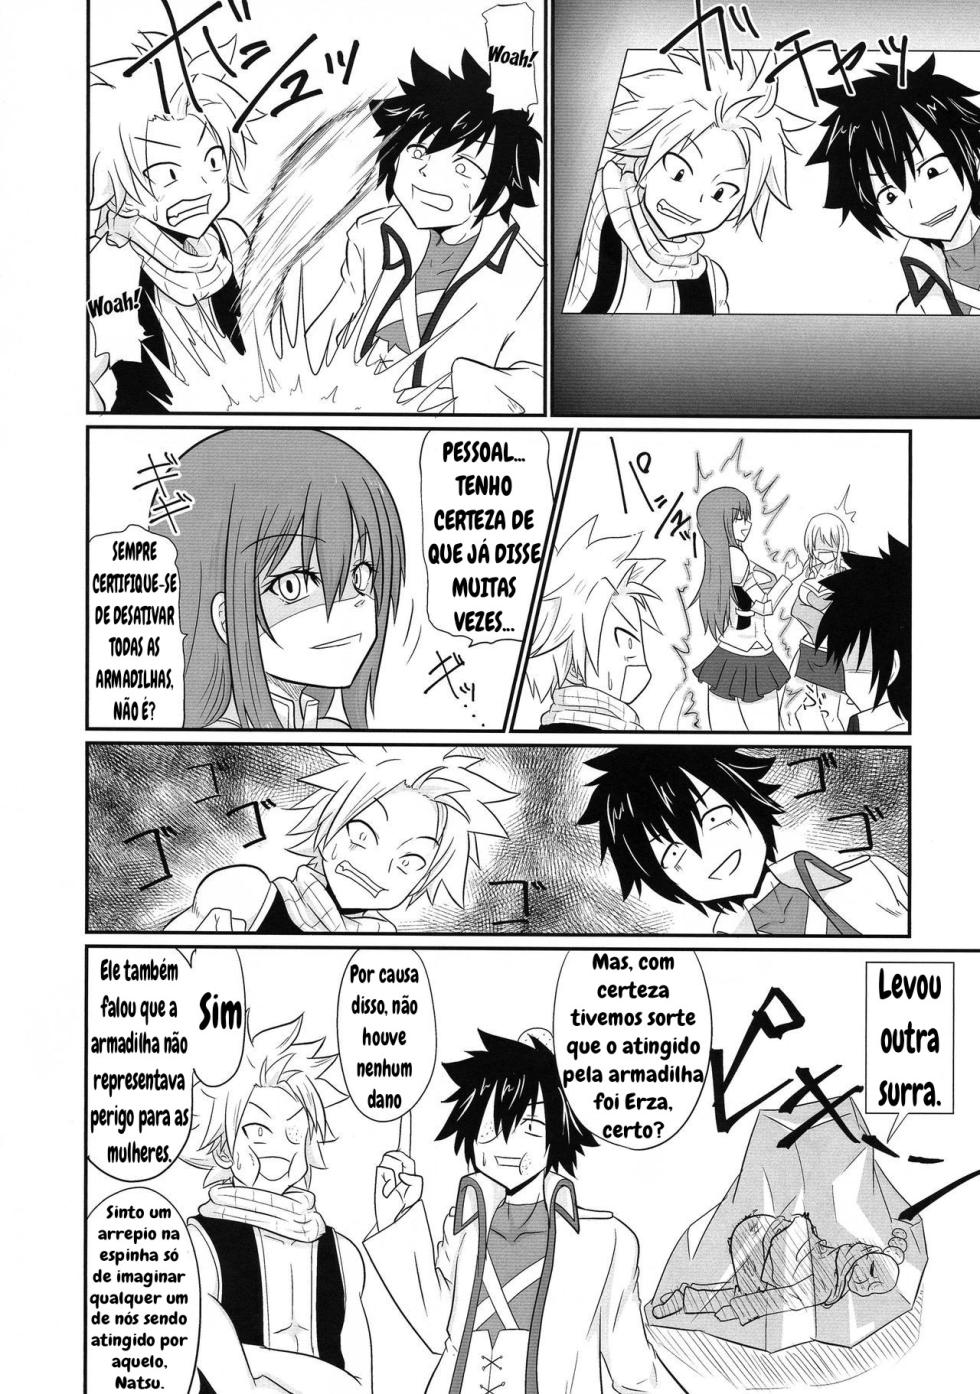 Futana-LINK! 04 (Fairy Tail) - Page 4